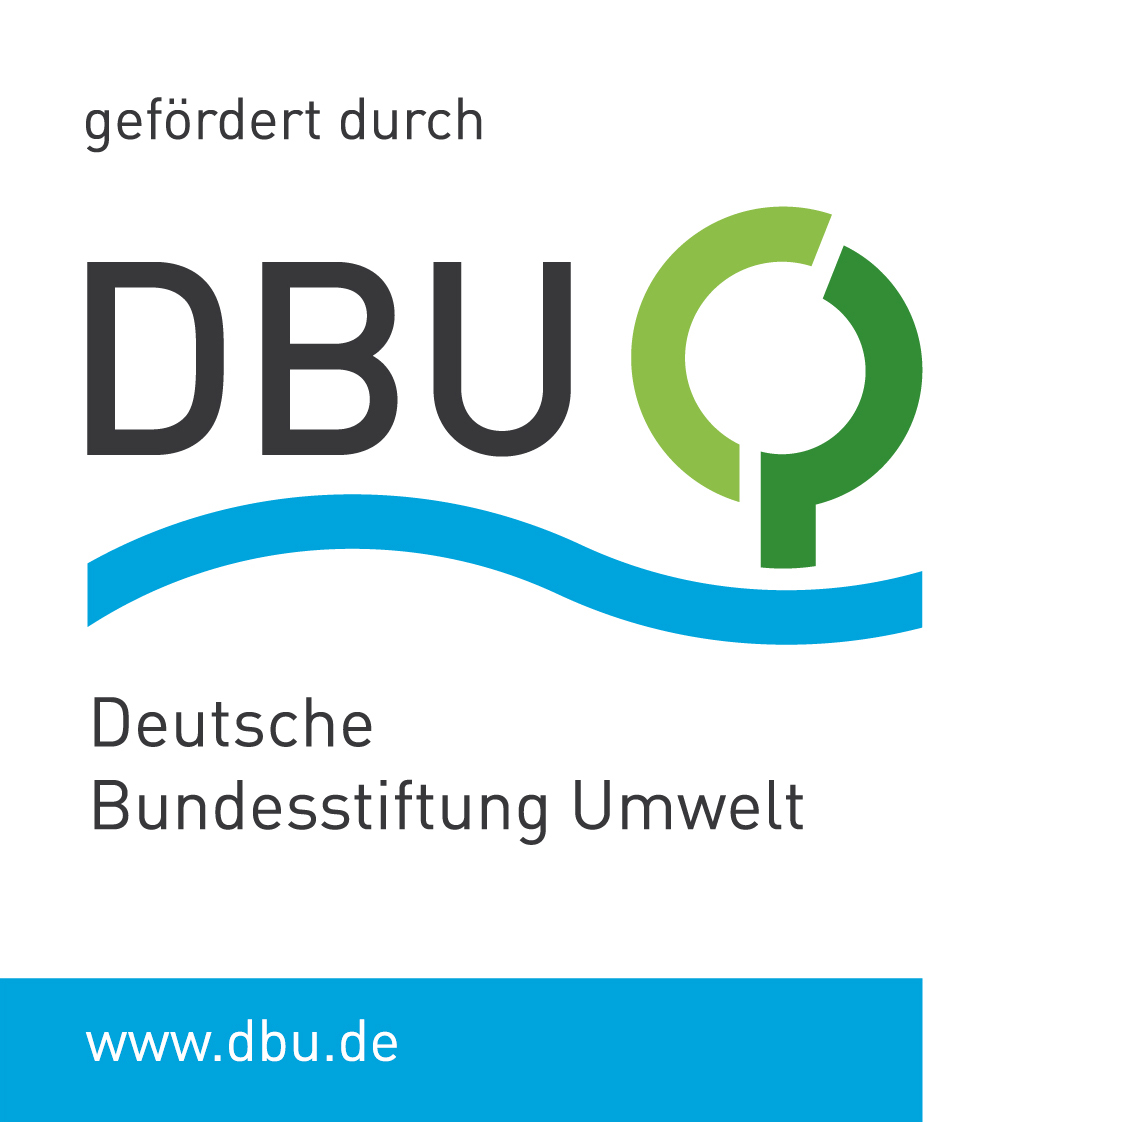 Man sieht das Logo der DBU und einen Hinweis, dass die DBU dieses Projekt gefördert hat.